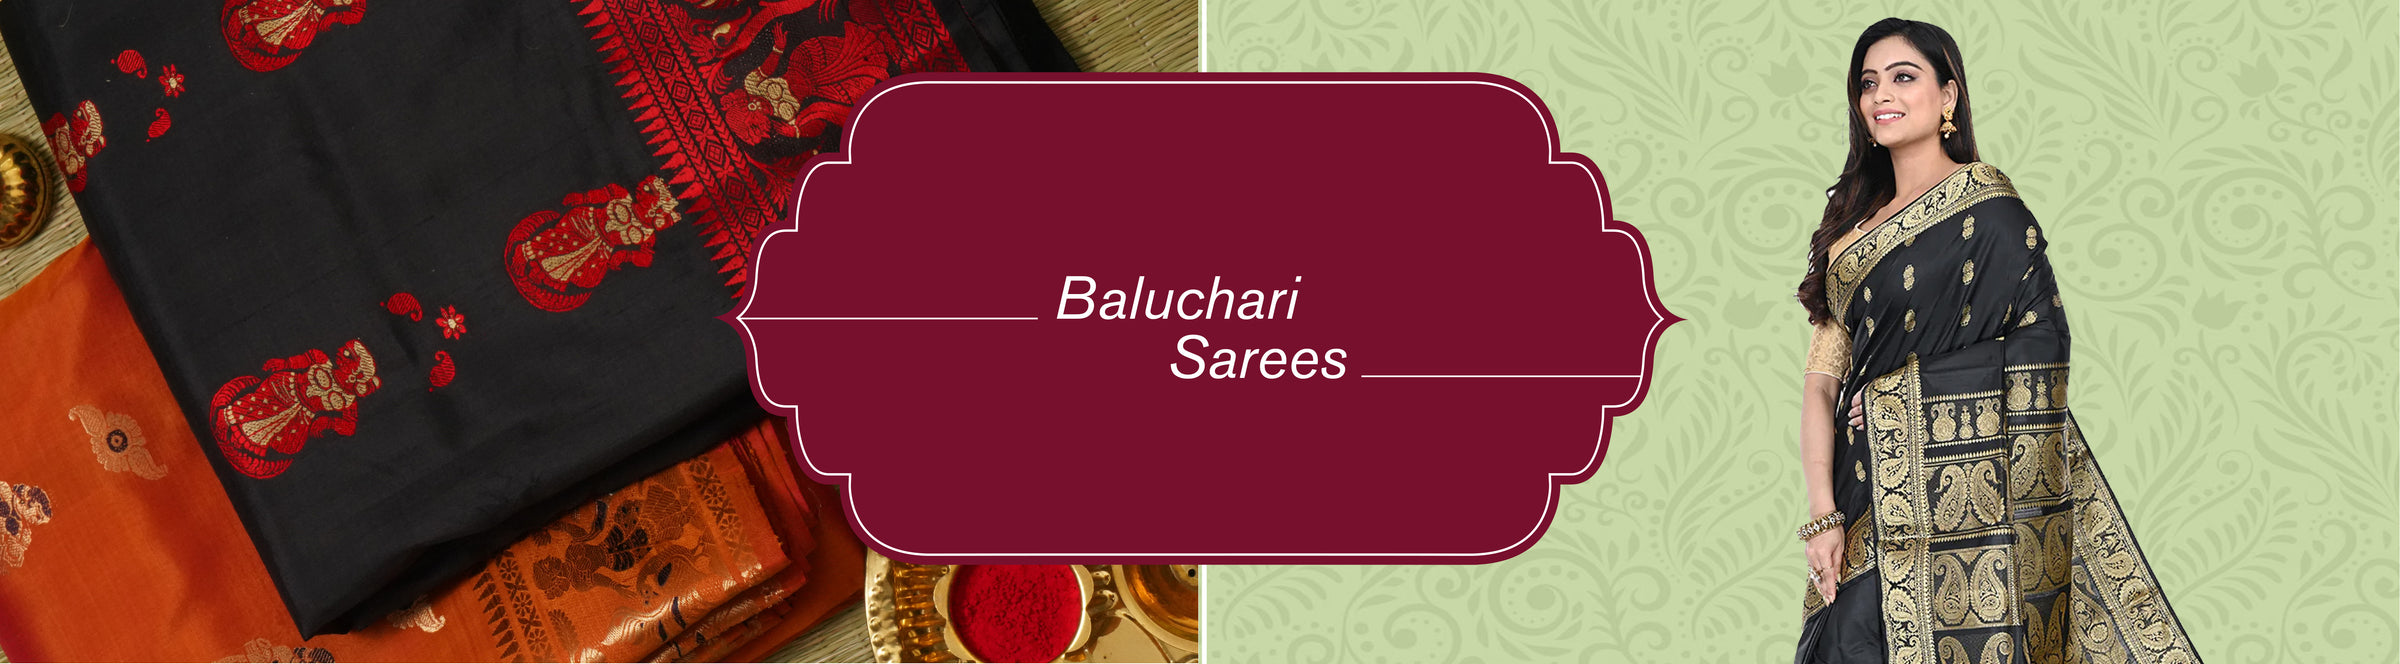 Baluchari Sarees